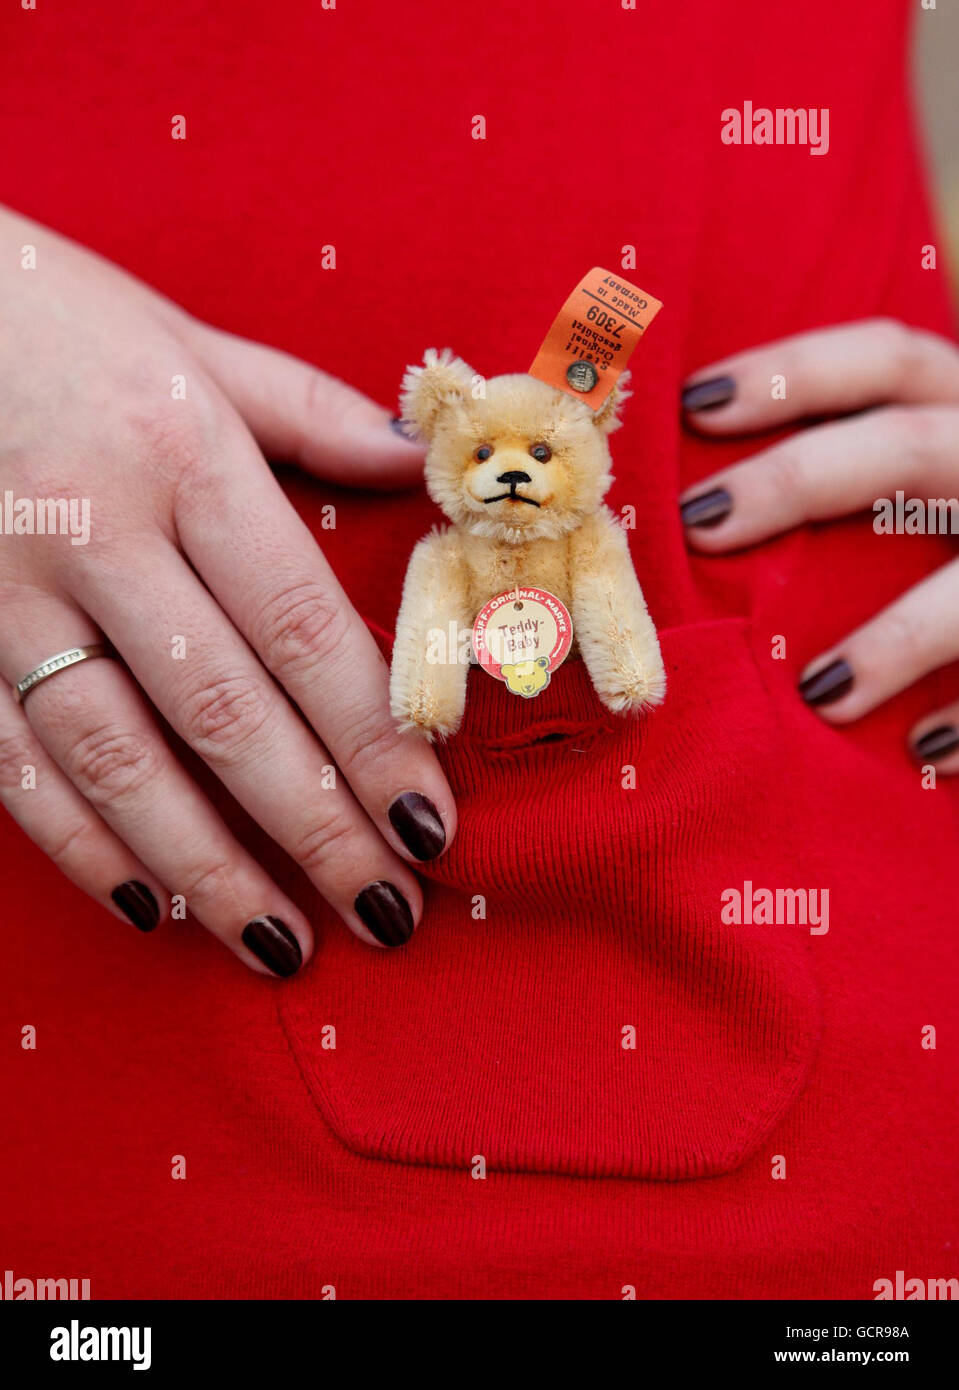 Un Teddy Baby in miniatura di Steiff alto 9 cm, circa 1934, si trova nella tasca di un dipendente di Christie durante una fotocellula a Christies a Londra, prima che venga venduto come parte di un'asta di 1 m di Teddy Bear e Soft Toy il 13 ottobre, dove si prevede di recuperare tra il 2,000 e il 3,000. Foto Stock